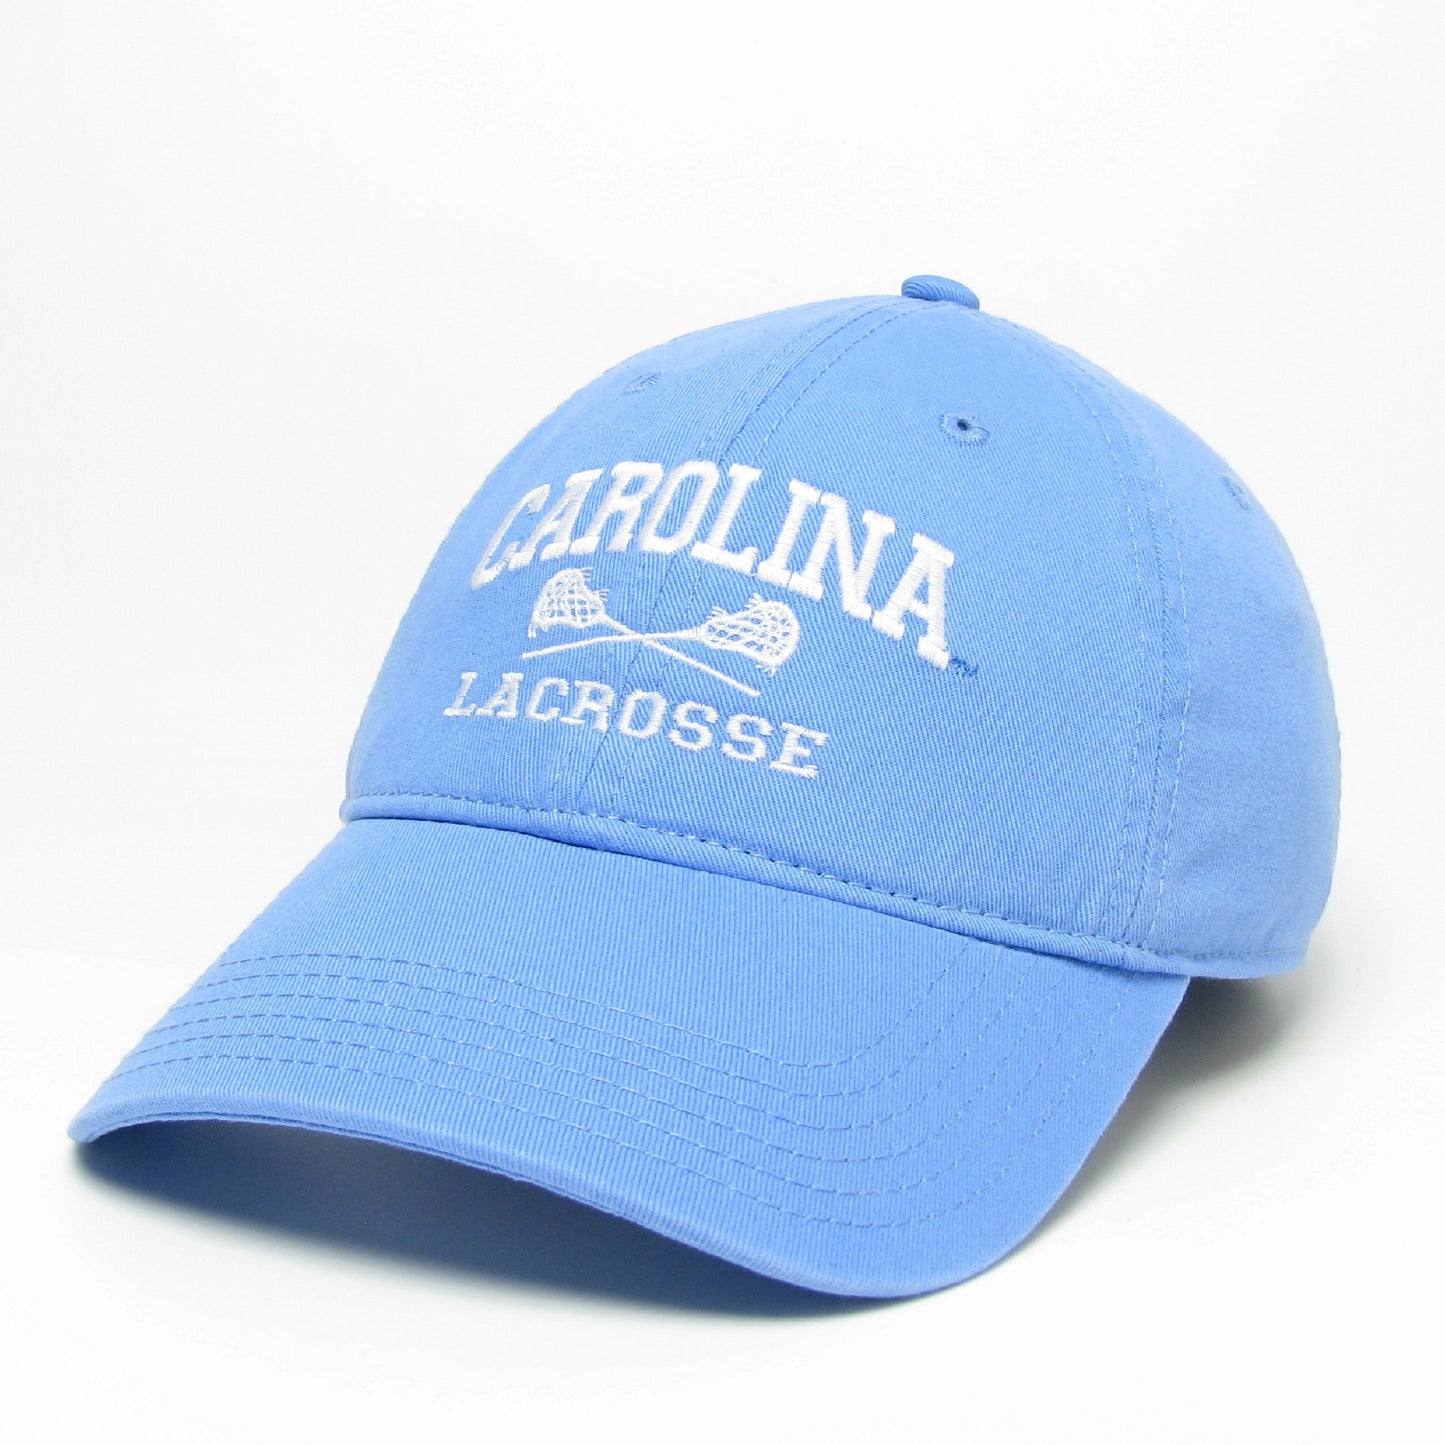 Carolina Lacrosse Hat by Legacy - UNC Sport Hat